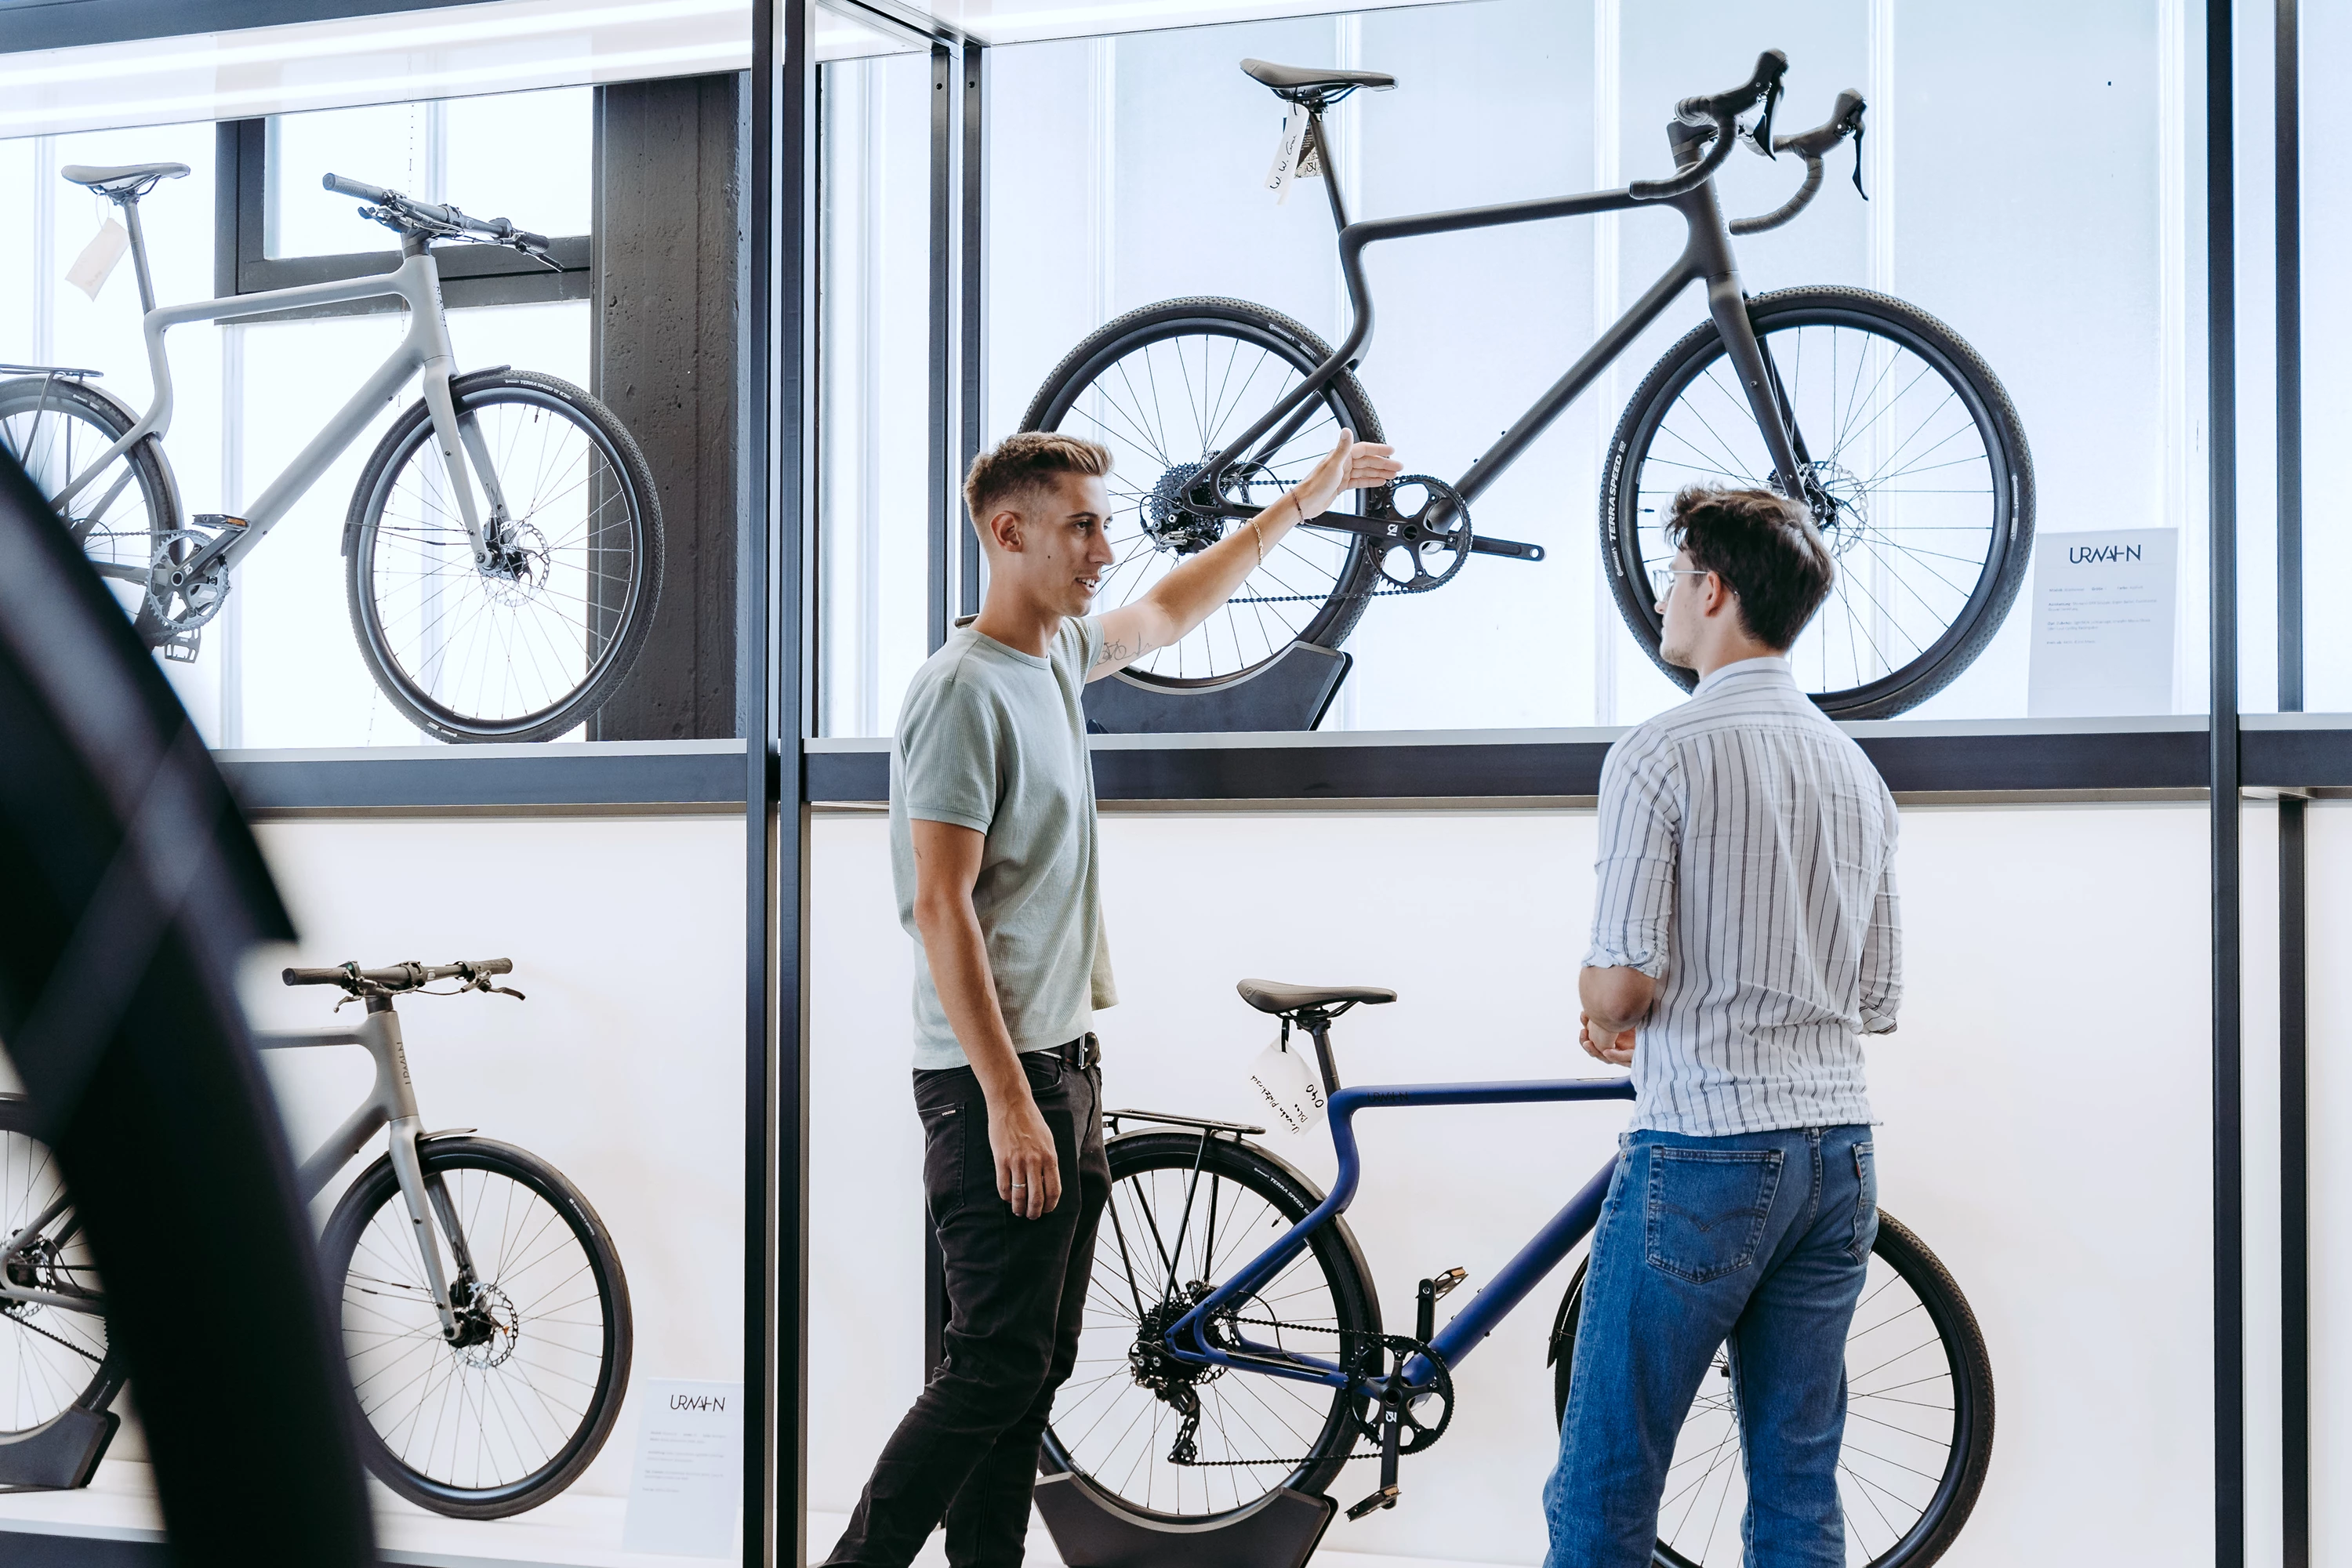 Ein junger Vertriebsmitarbeiter berät einen Kunden mittleren Alters im Urwahn Bike Showroom, im Hintergrund stehen mehrere Urwahn-Fahrräder